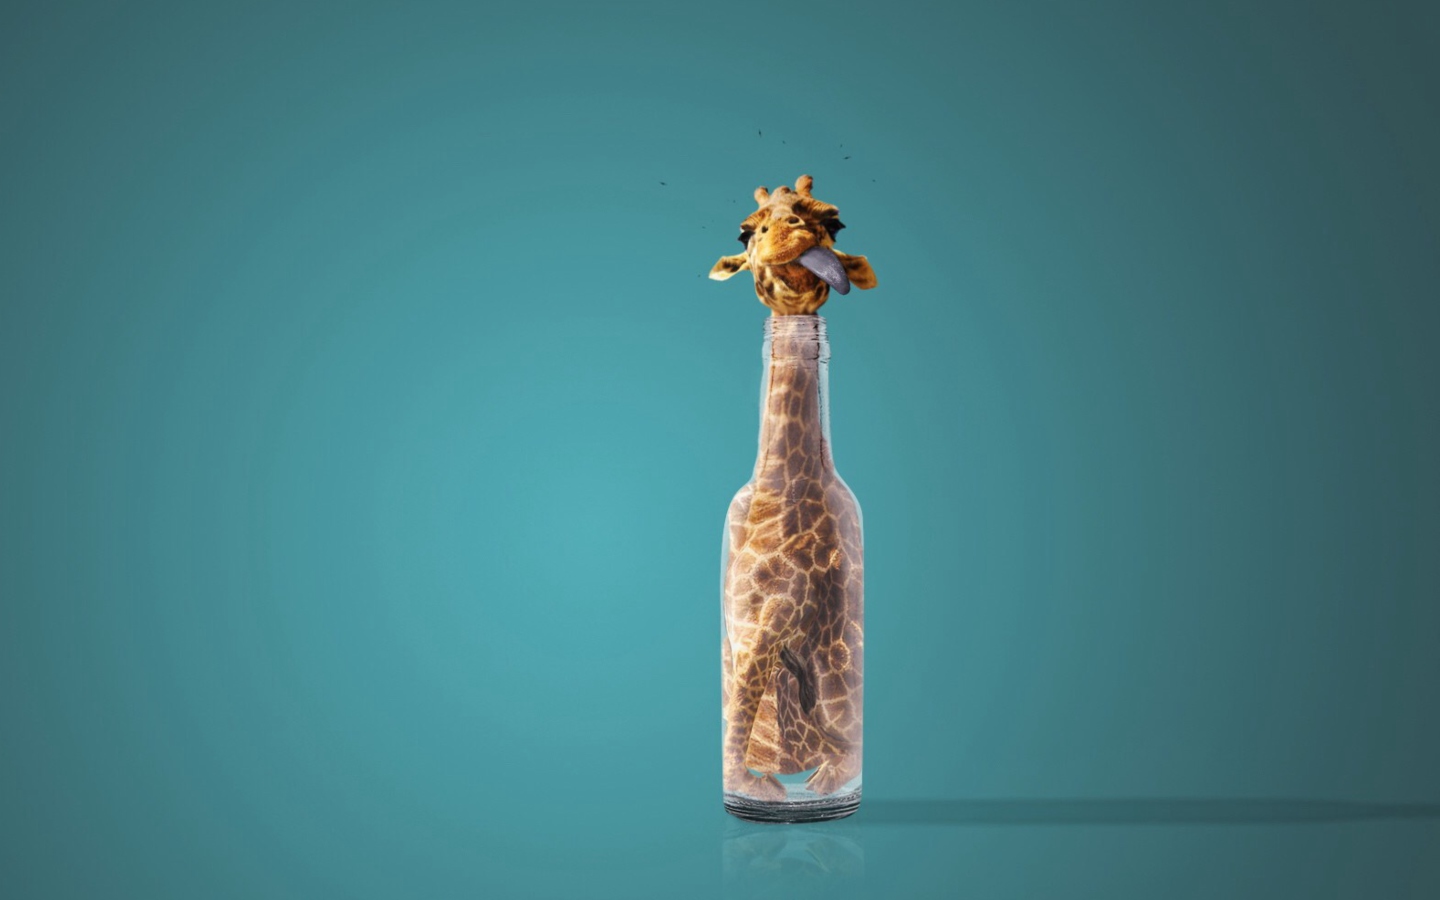 Giraffe In Bottle wallpaper 1440x900